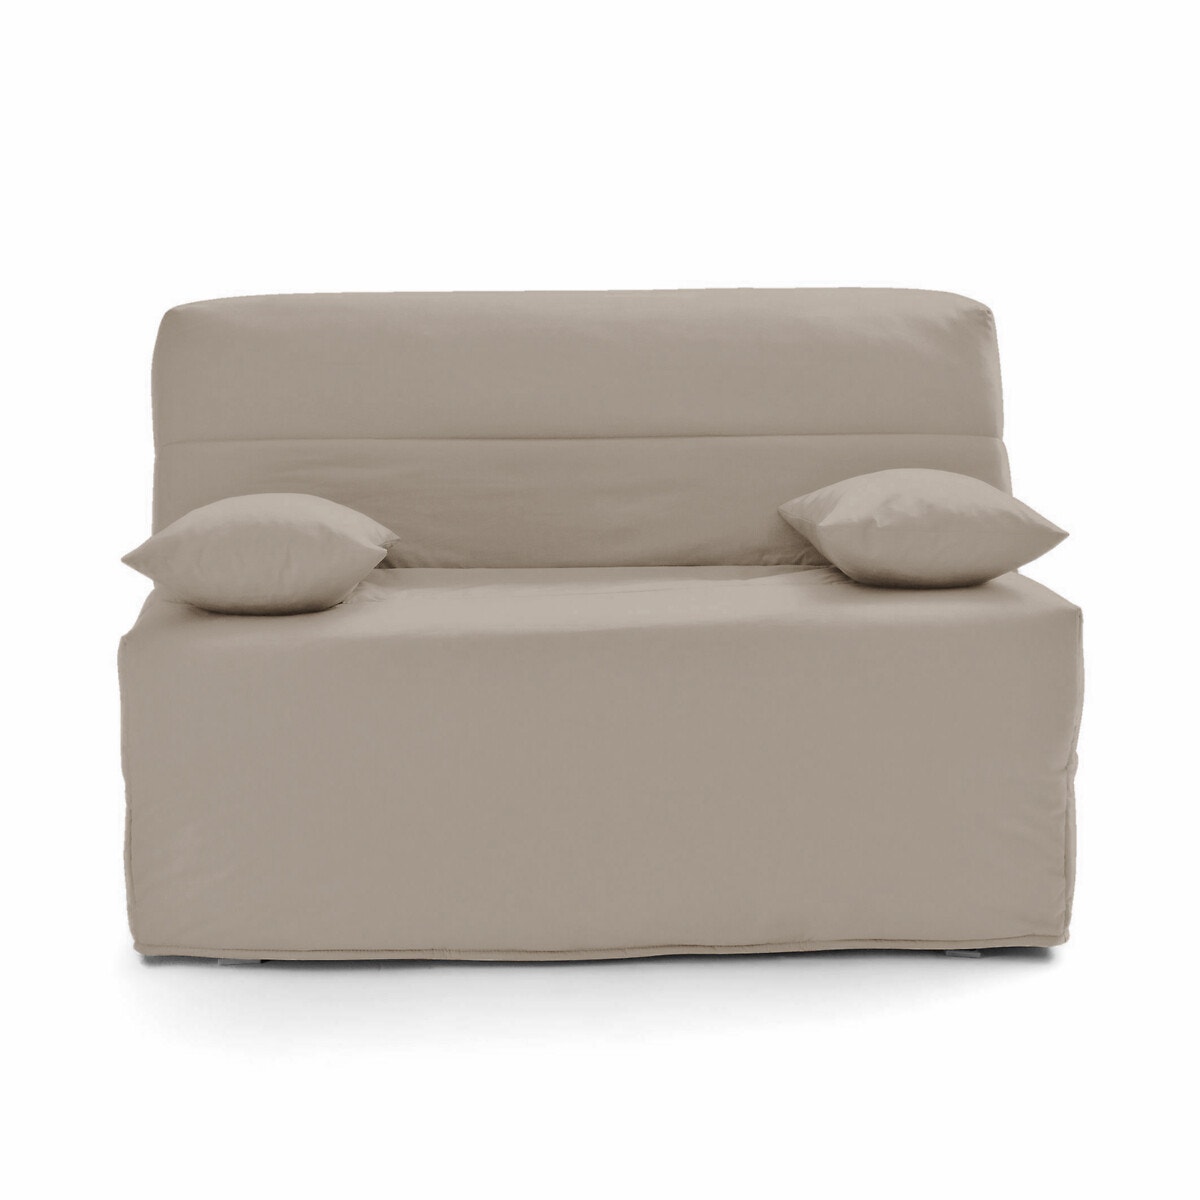 Σπίτι > Λευκά είδη > Ύφασμα, διακόσμηση > Καλύμματα καναπέ, καρέκλας > Καλύμματα για πτυσσόμενο καναπέ clic-clac, BZ Κάλυμμα βάσης για καναπέ χωρίς μπράτσα 90x190 cm